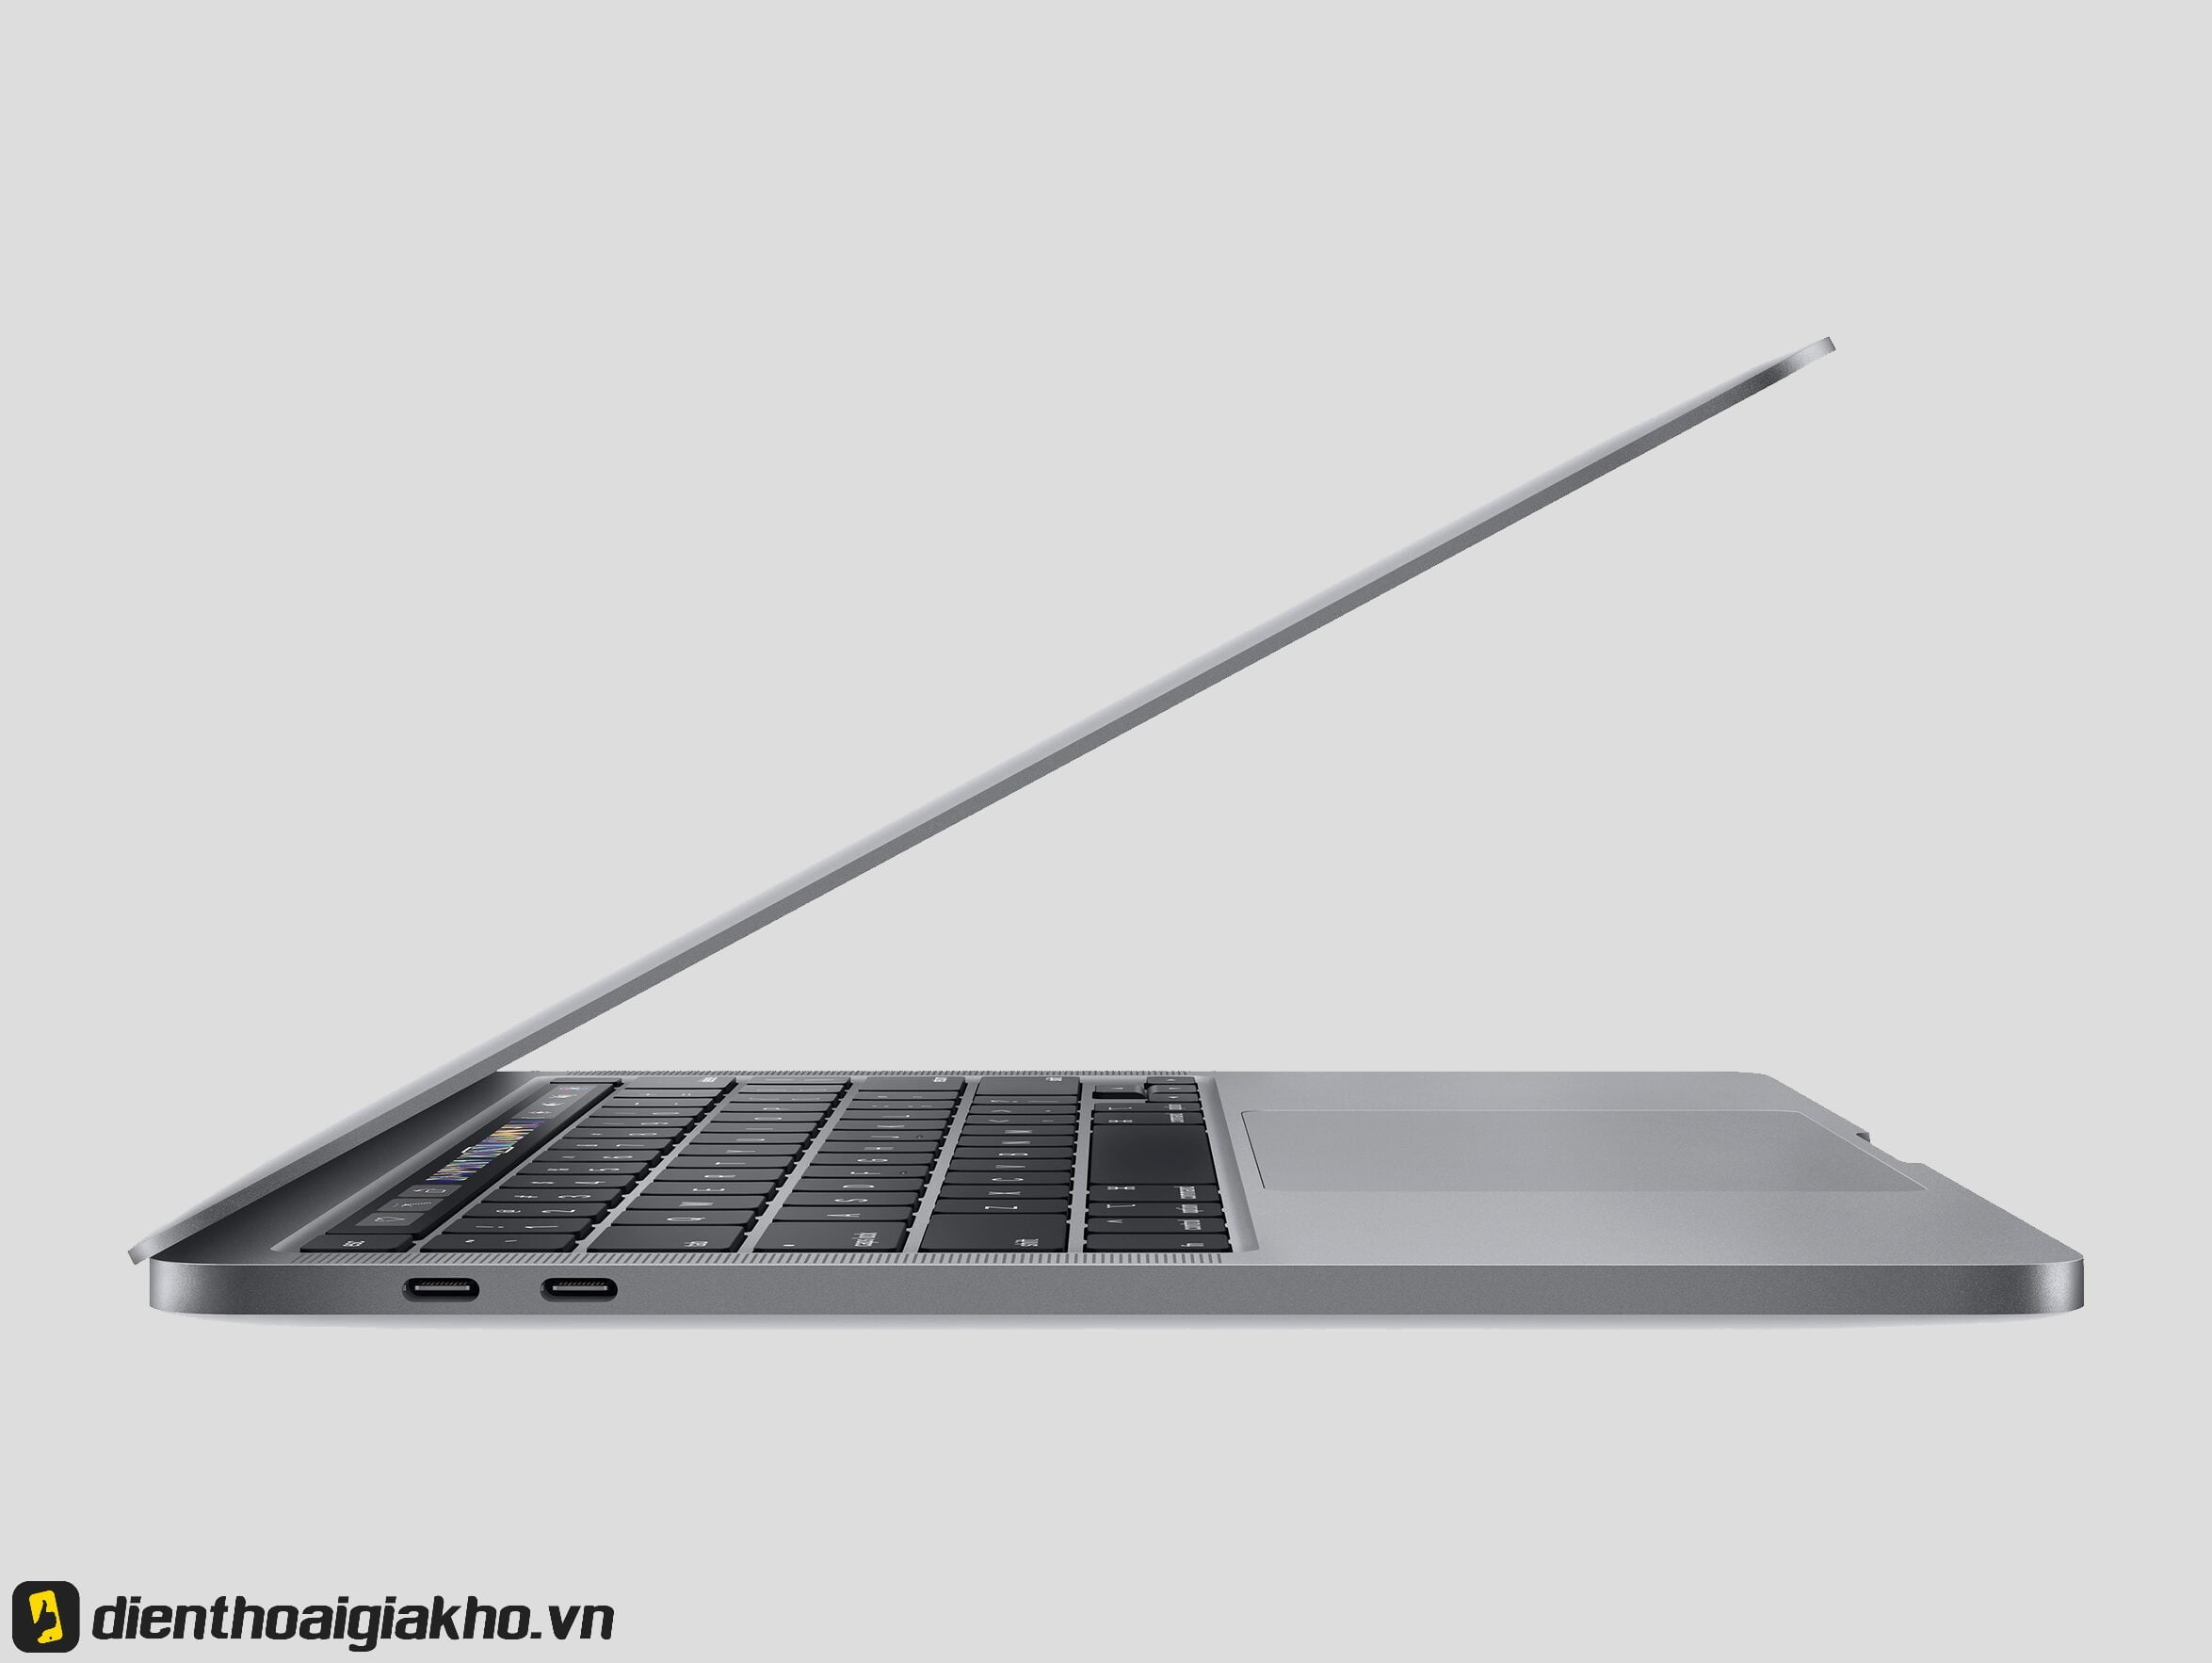 MWP52 - Apple MacBook Pro 2020 13 inch 1TB Gray Chính Hãng với những cải tiến độc đáo về nhiều mặt.